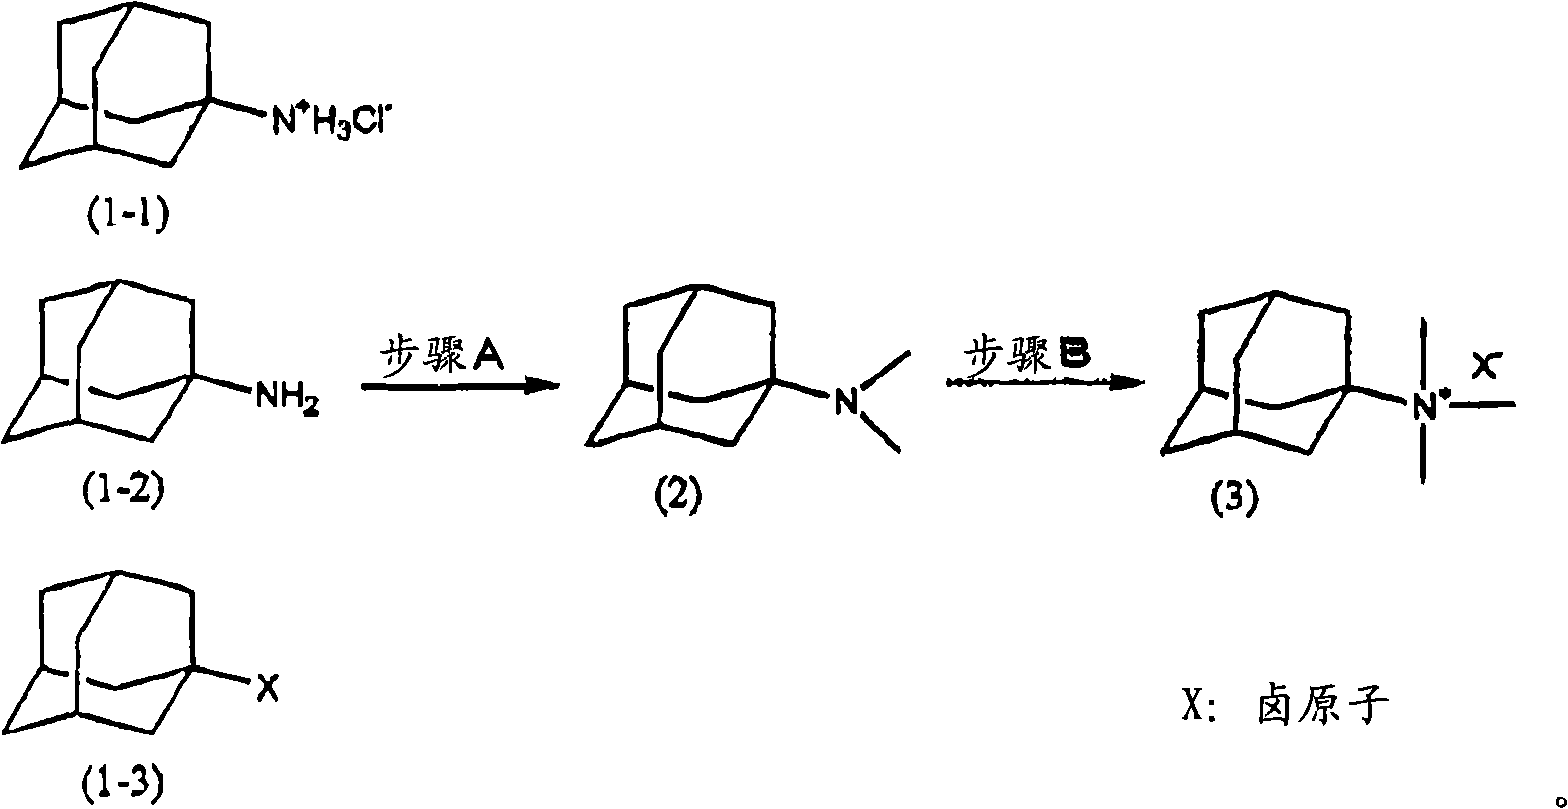 Method for preparing quaternary ammonium salt containing adamantine alkyl